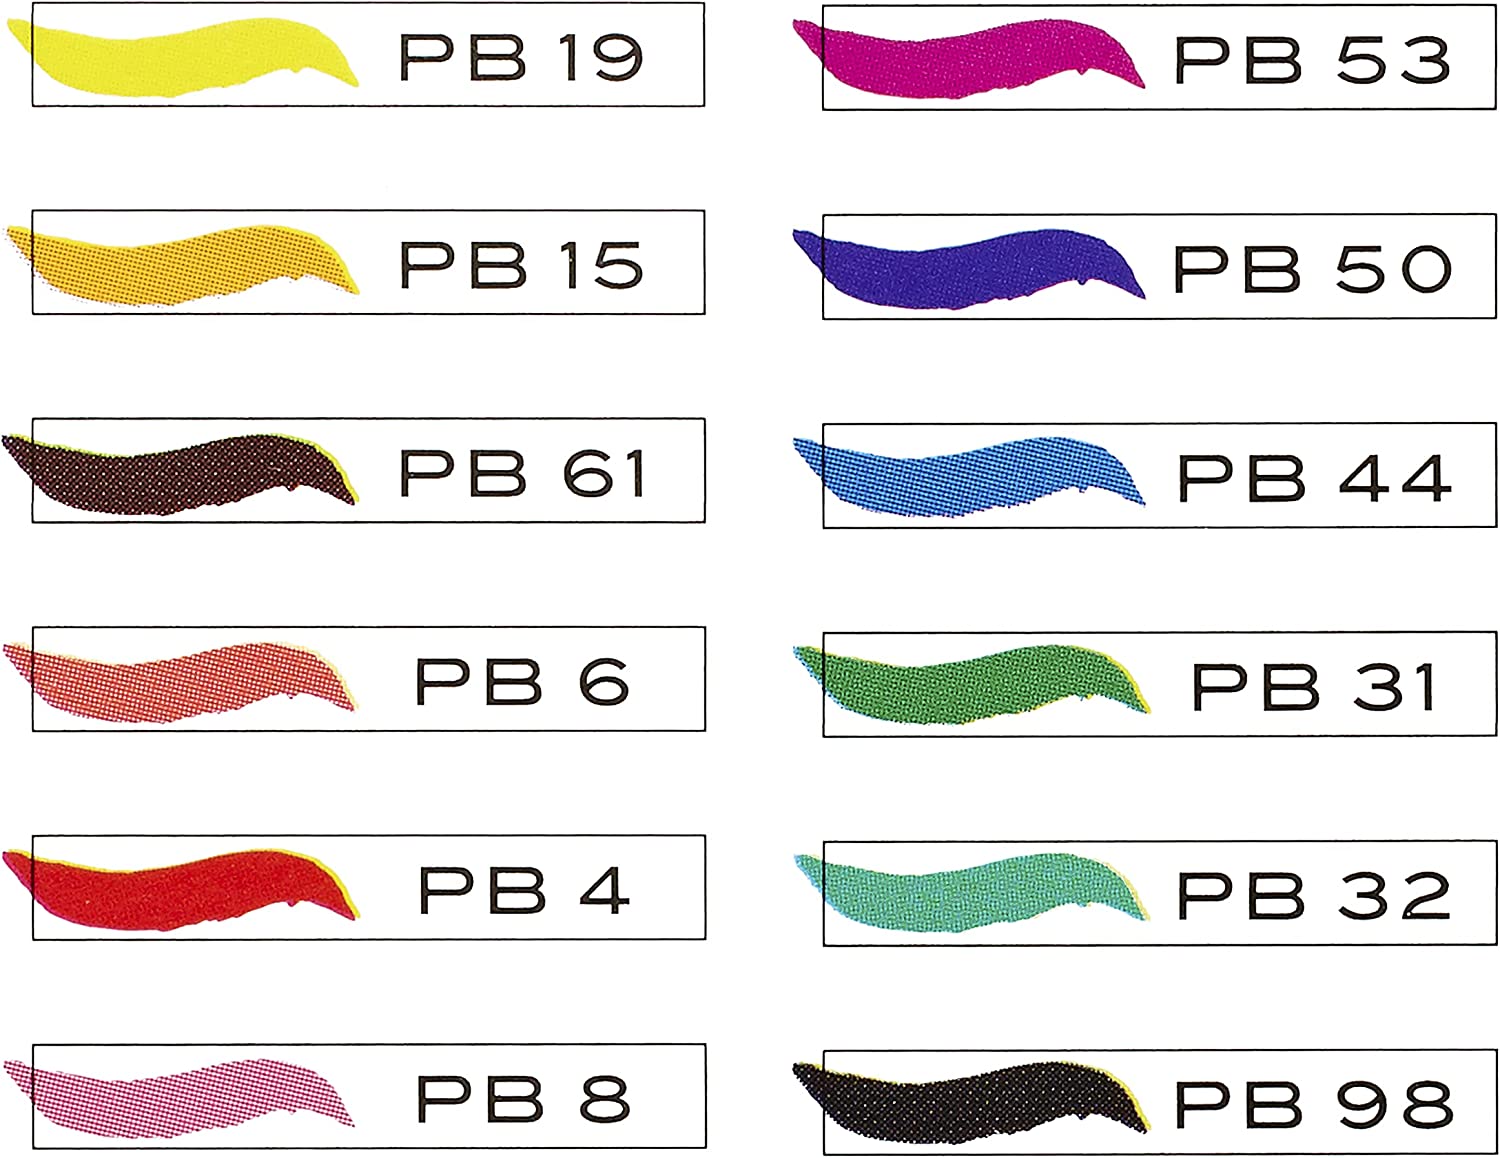 Prismacolor Art Marker Set of 12 - Color: Cool Greys